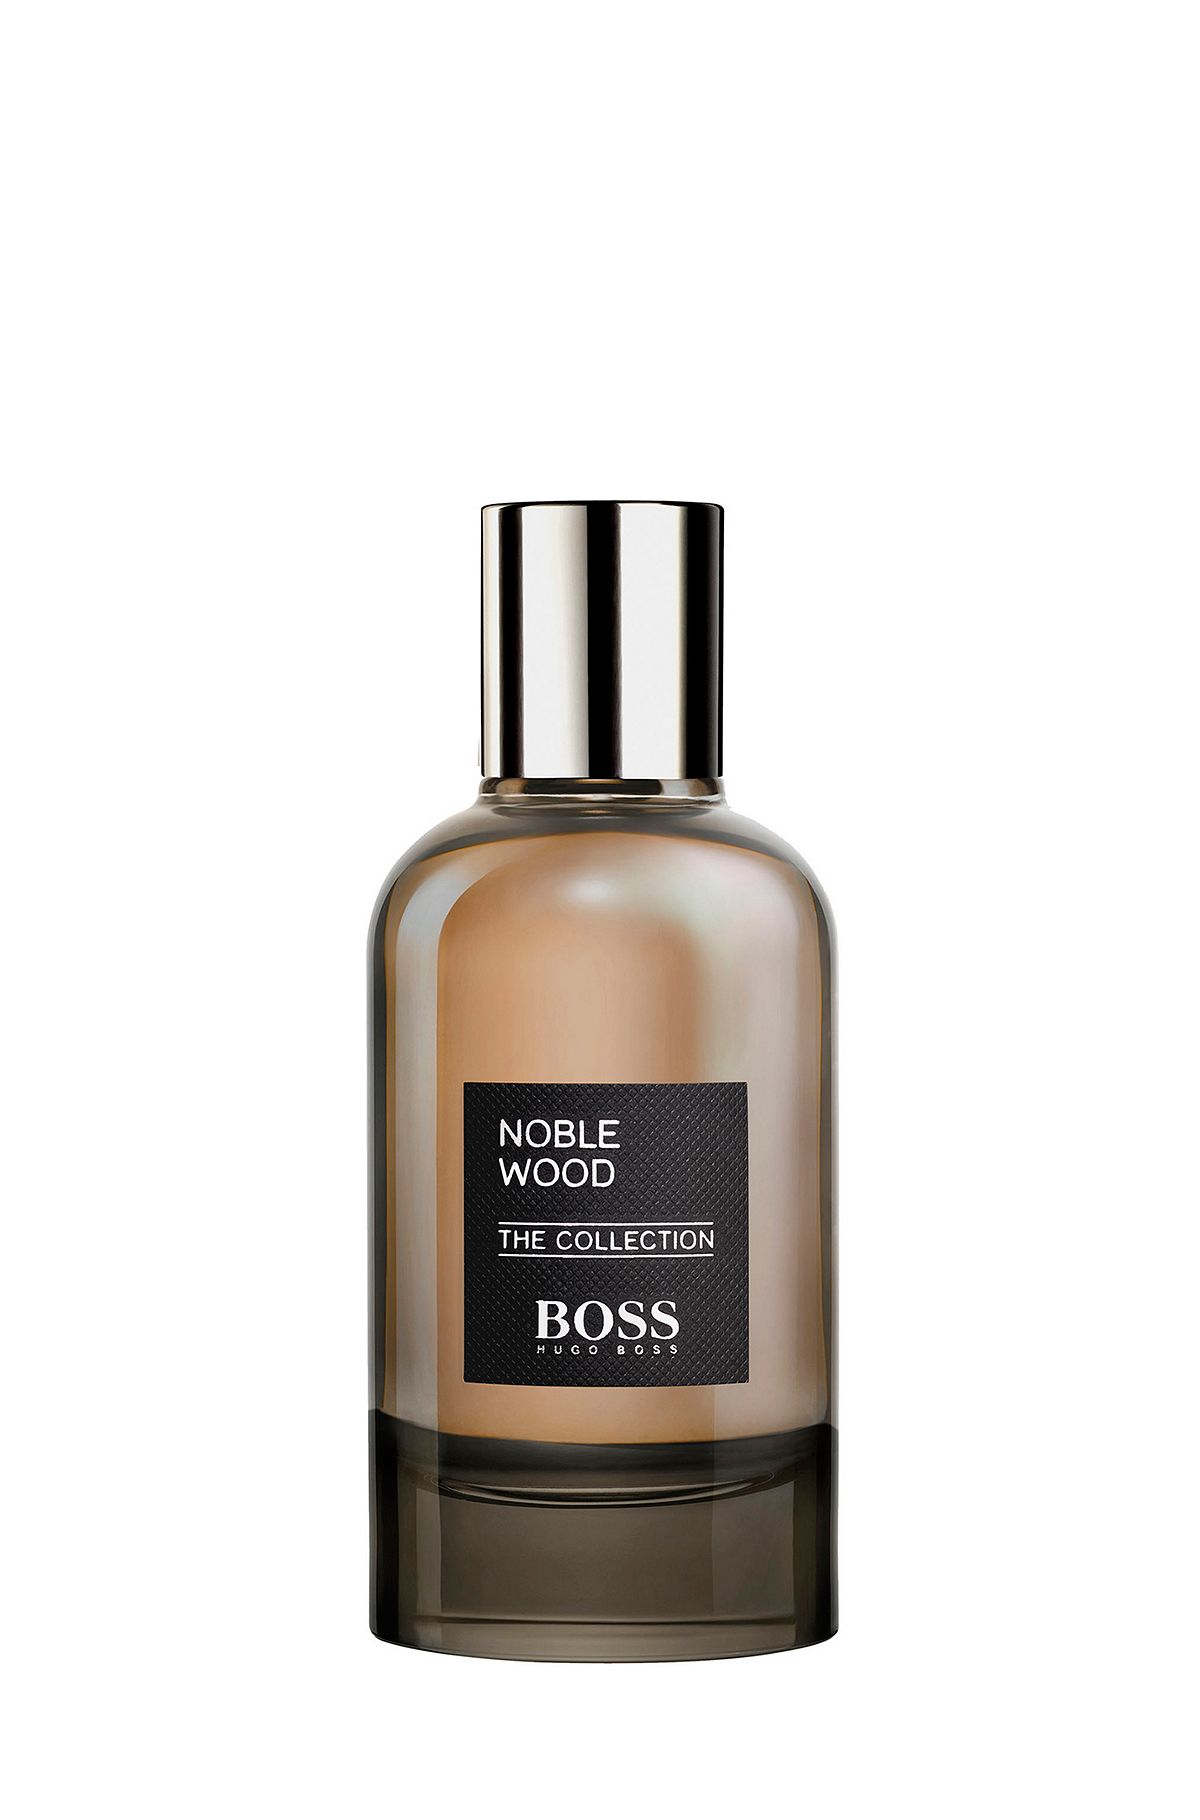 Eau de parfum BOSS The Collection Noble Wood, 100 ml, Assorted-Pre-Pack